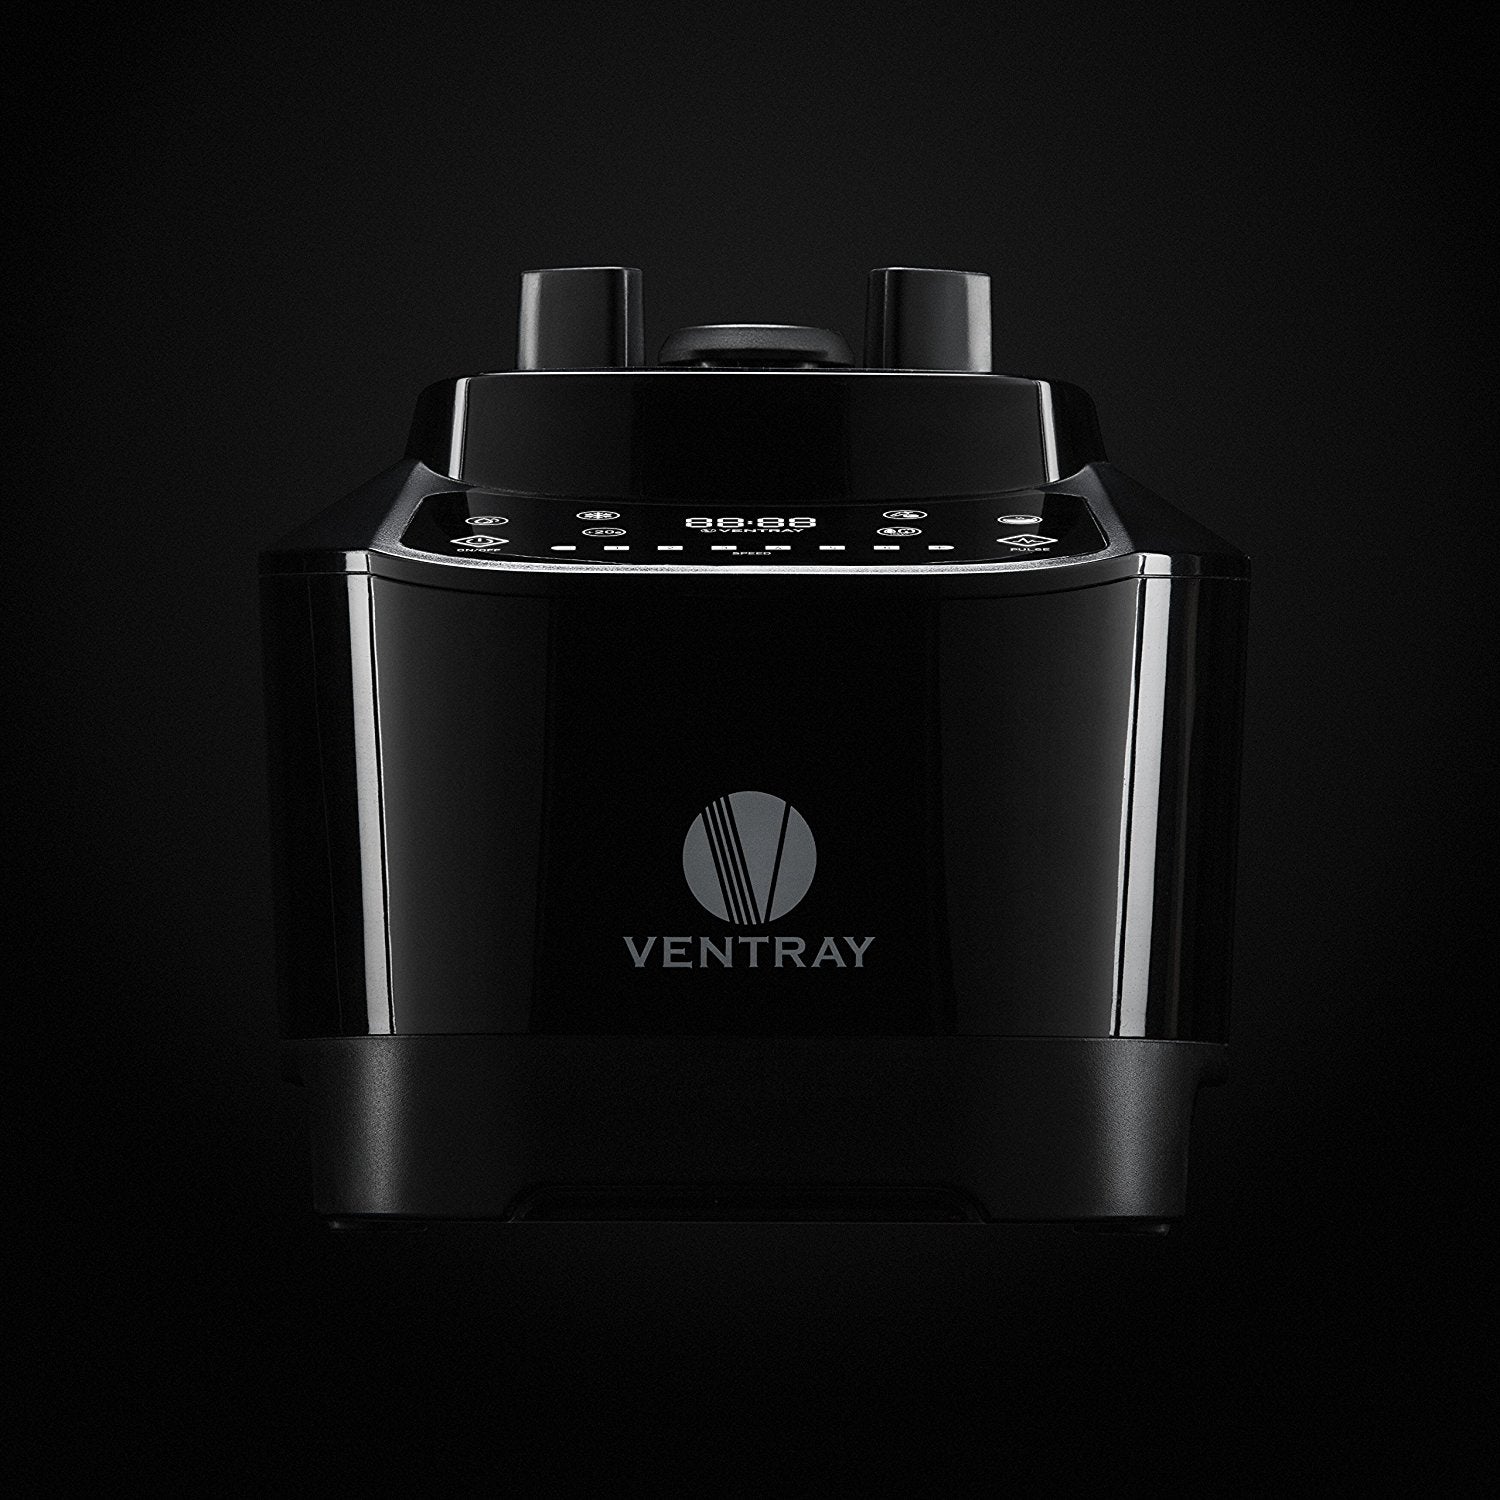 Ventray Pro 600 High Power Professional Blender 1500-Watt 8-Speed 5